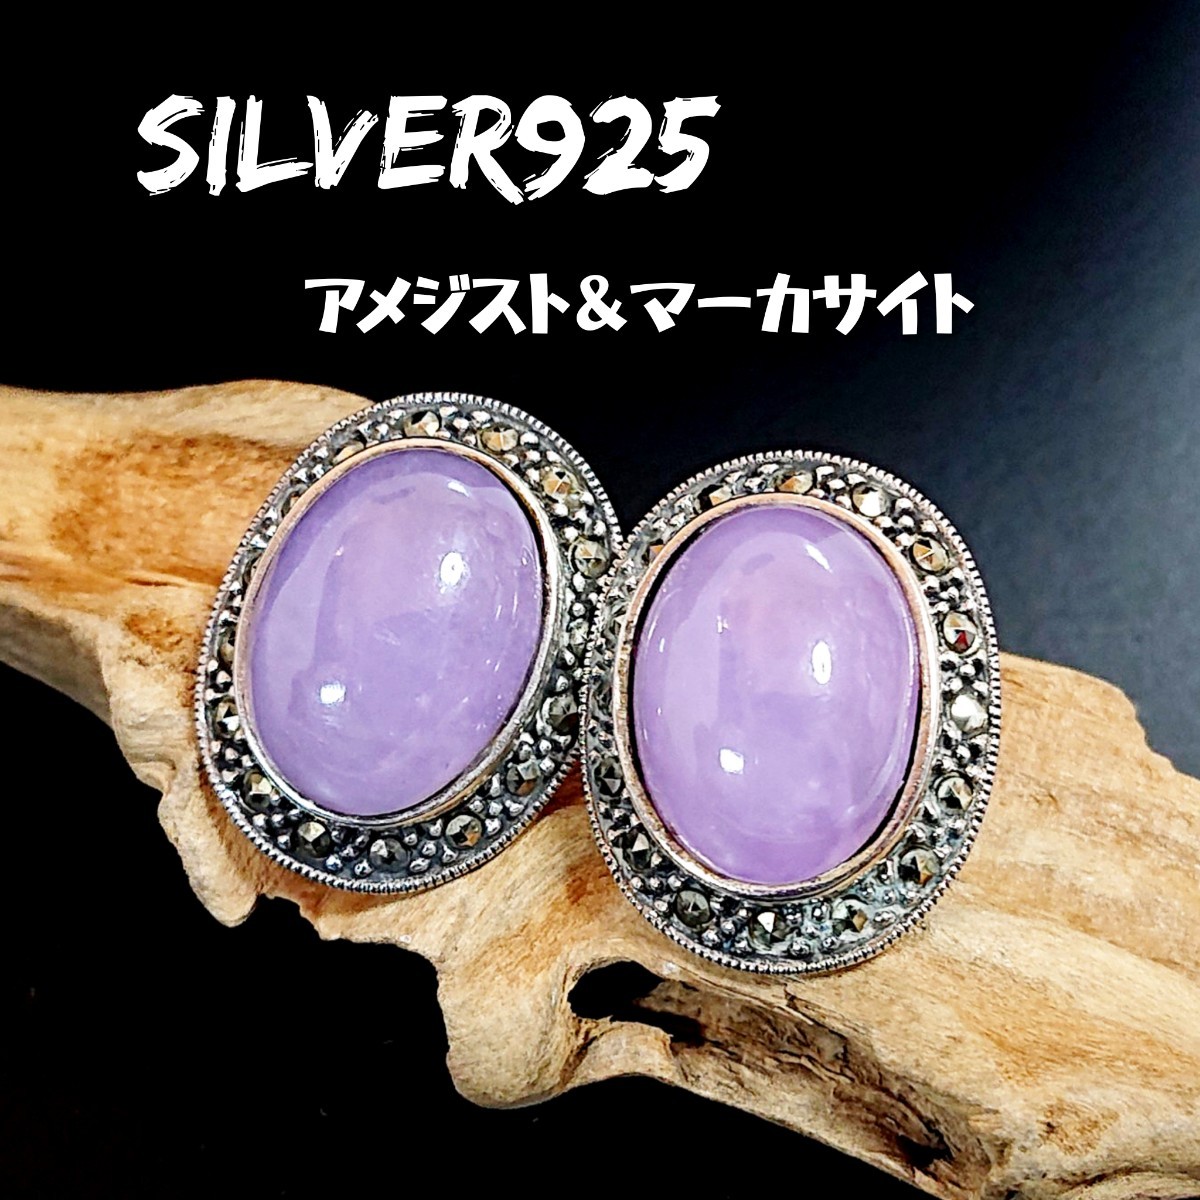 4724 SILVER925 ラベンダーアメジストピアス シルバー925 天然石 マーカサイト 大粒 オーバル 楕円 紫水晶 クォーツ 綺麗な石 パープル